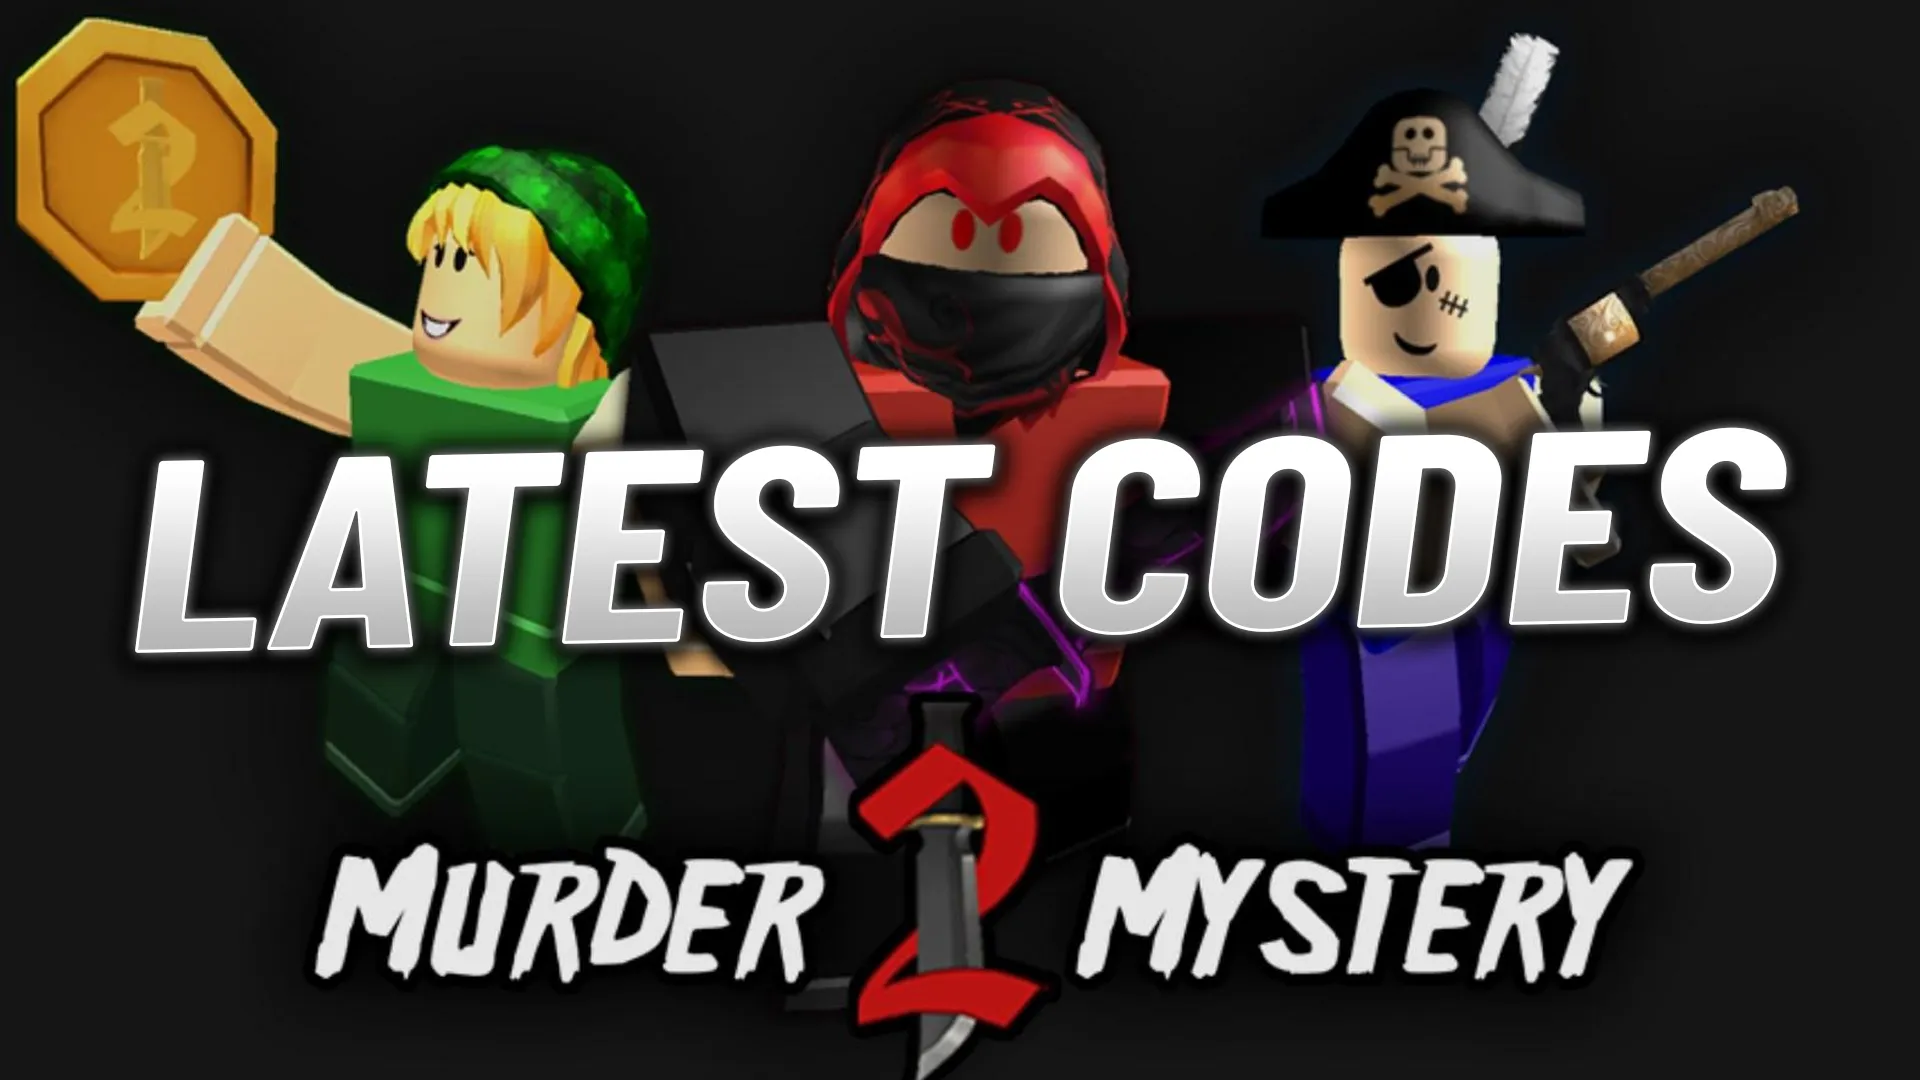 Murder Mystery 3 codes (December 2023)